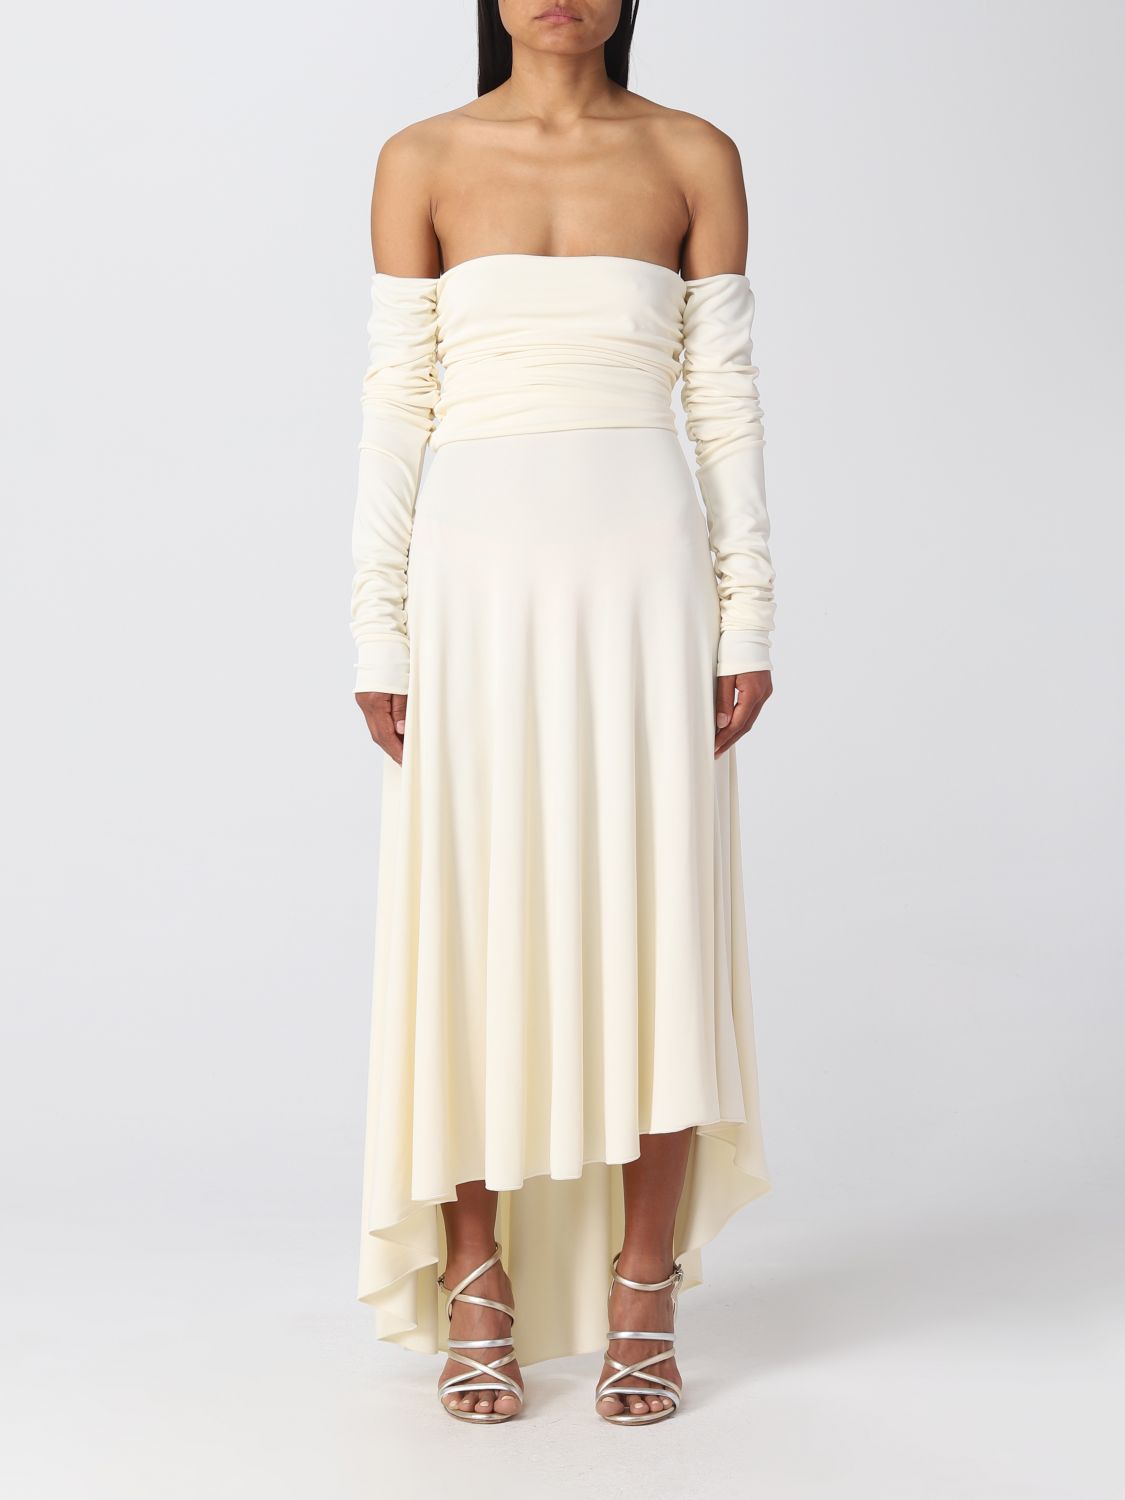 Erika Cavallini Dress  Woman Colour White